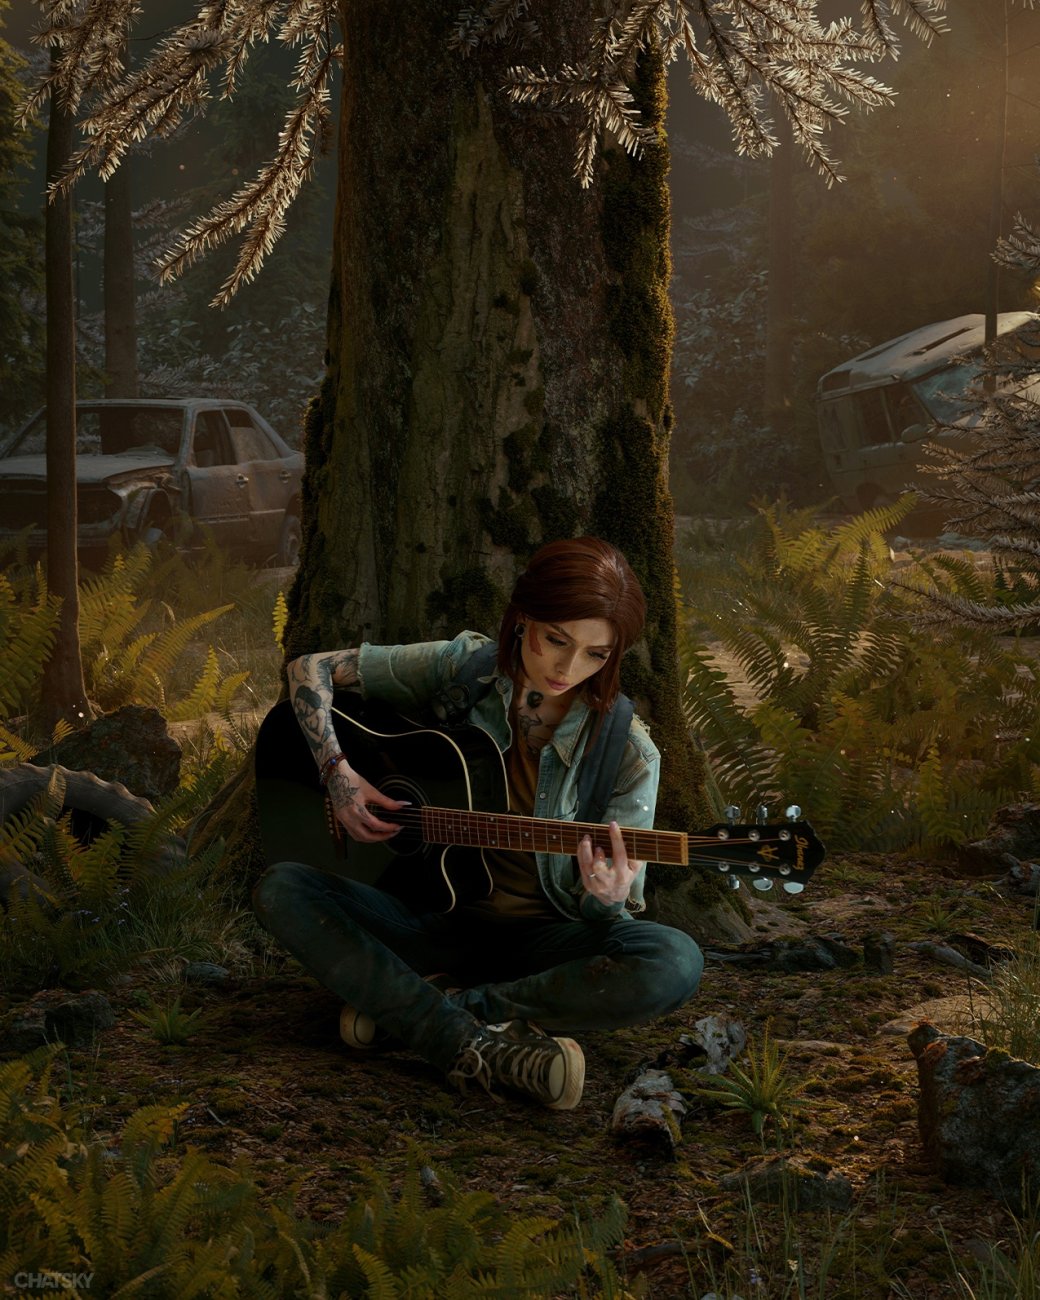 Галерея Косплеерша воссоздала многие сцены с участием Элли из The Last of Us Part 2 - 2 фото